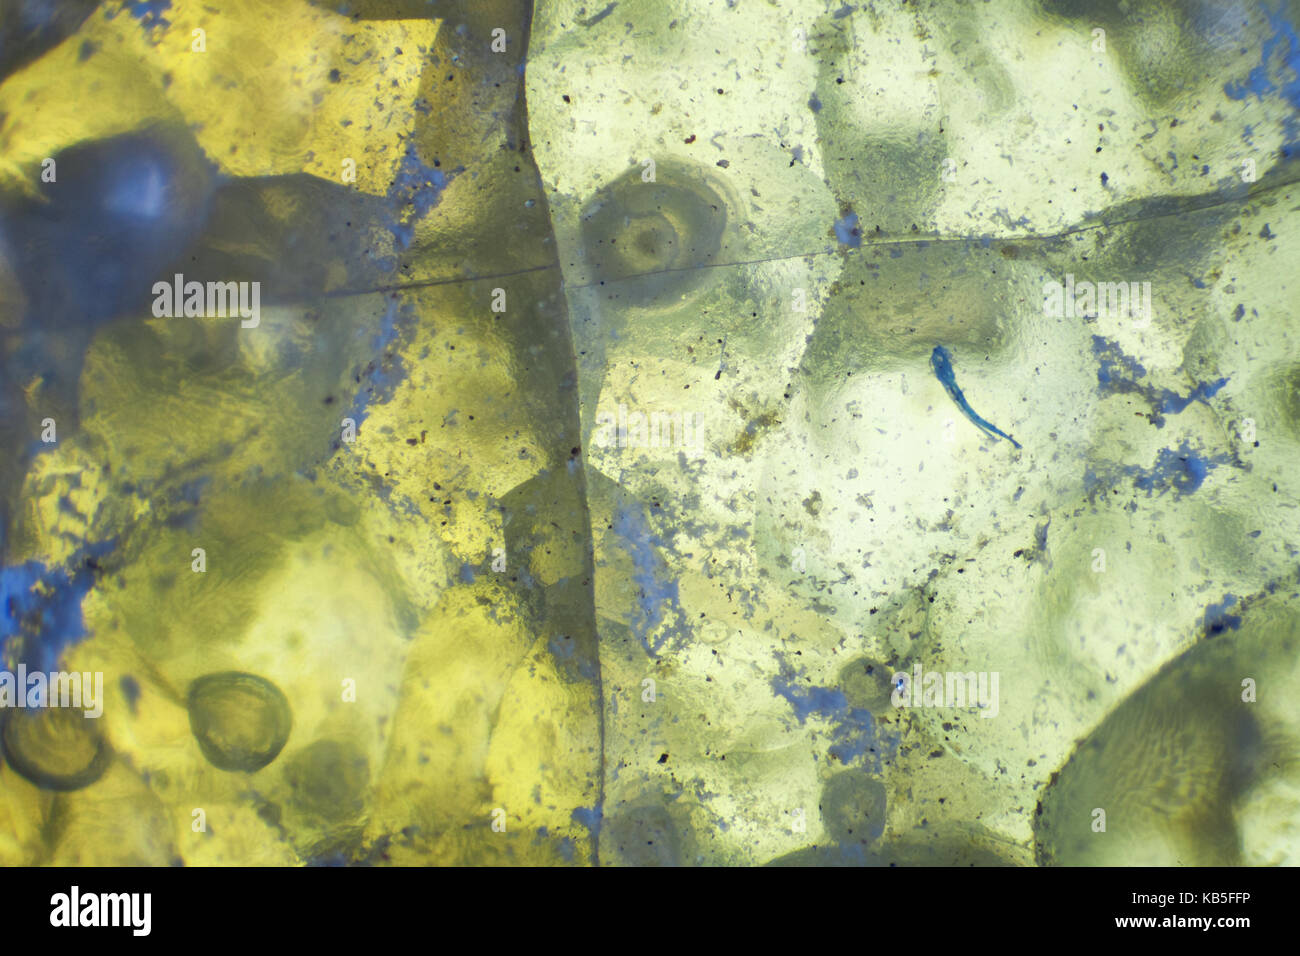 Zusammenfassung Hintergrund gelb-grüner Achat Scheibe mineral Makrofotografie Vergrößerung x 40 Stockfoto